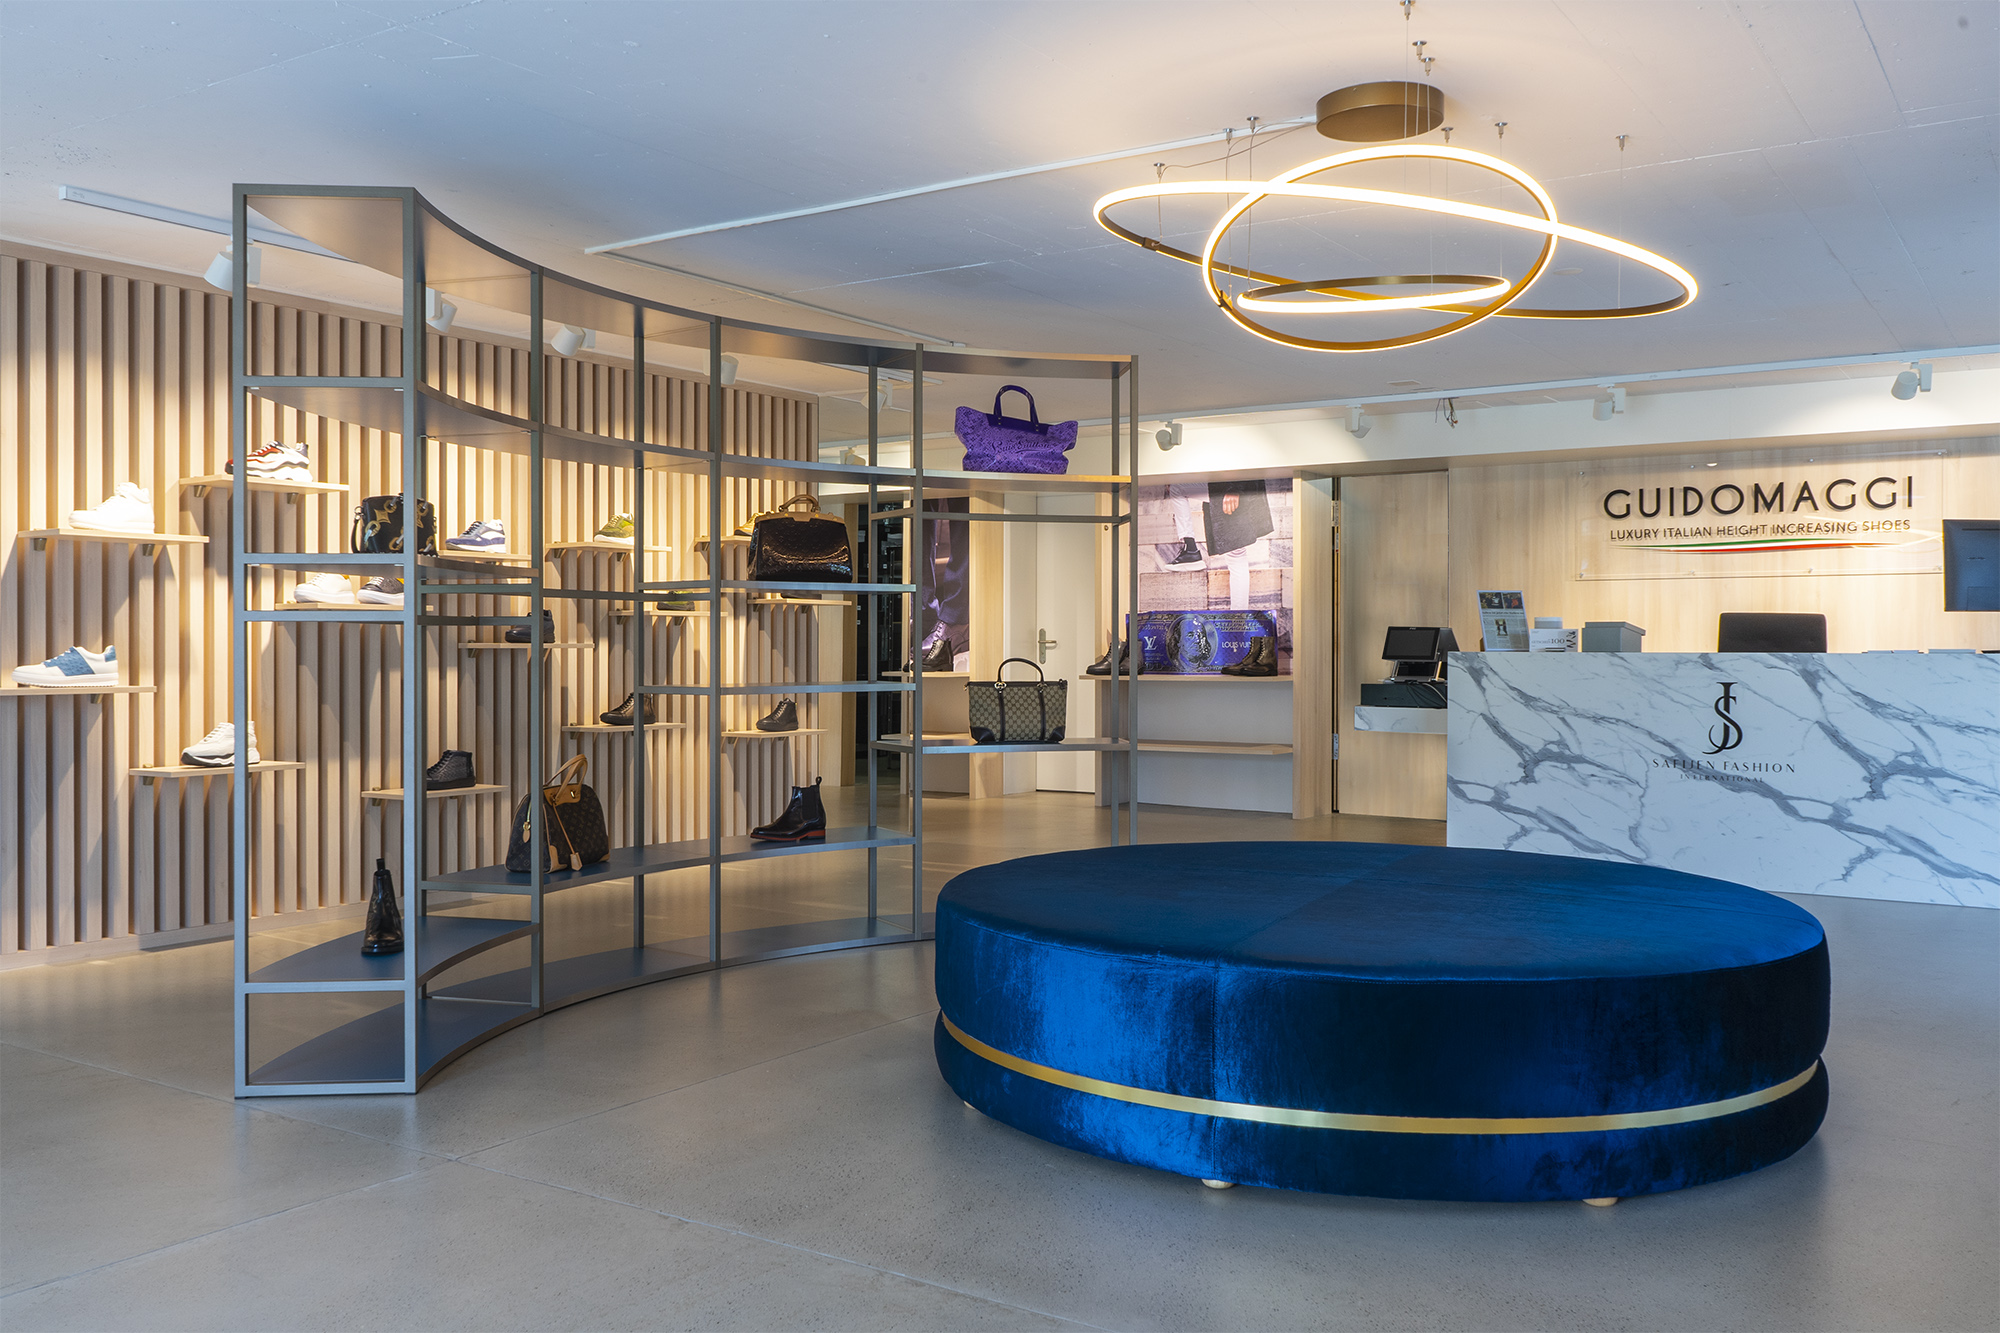 Zurigo: Apre il flagship store GuidoMaggi: il più grande negozio di scarpe con rialzo al mondo